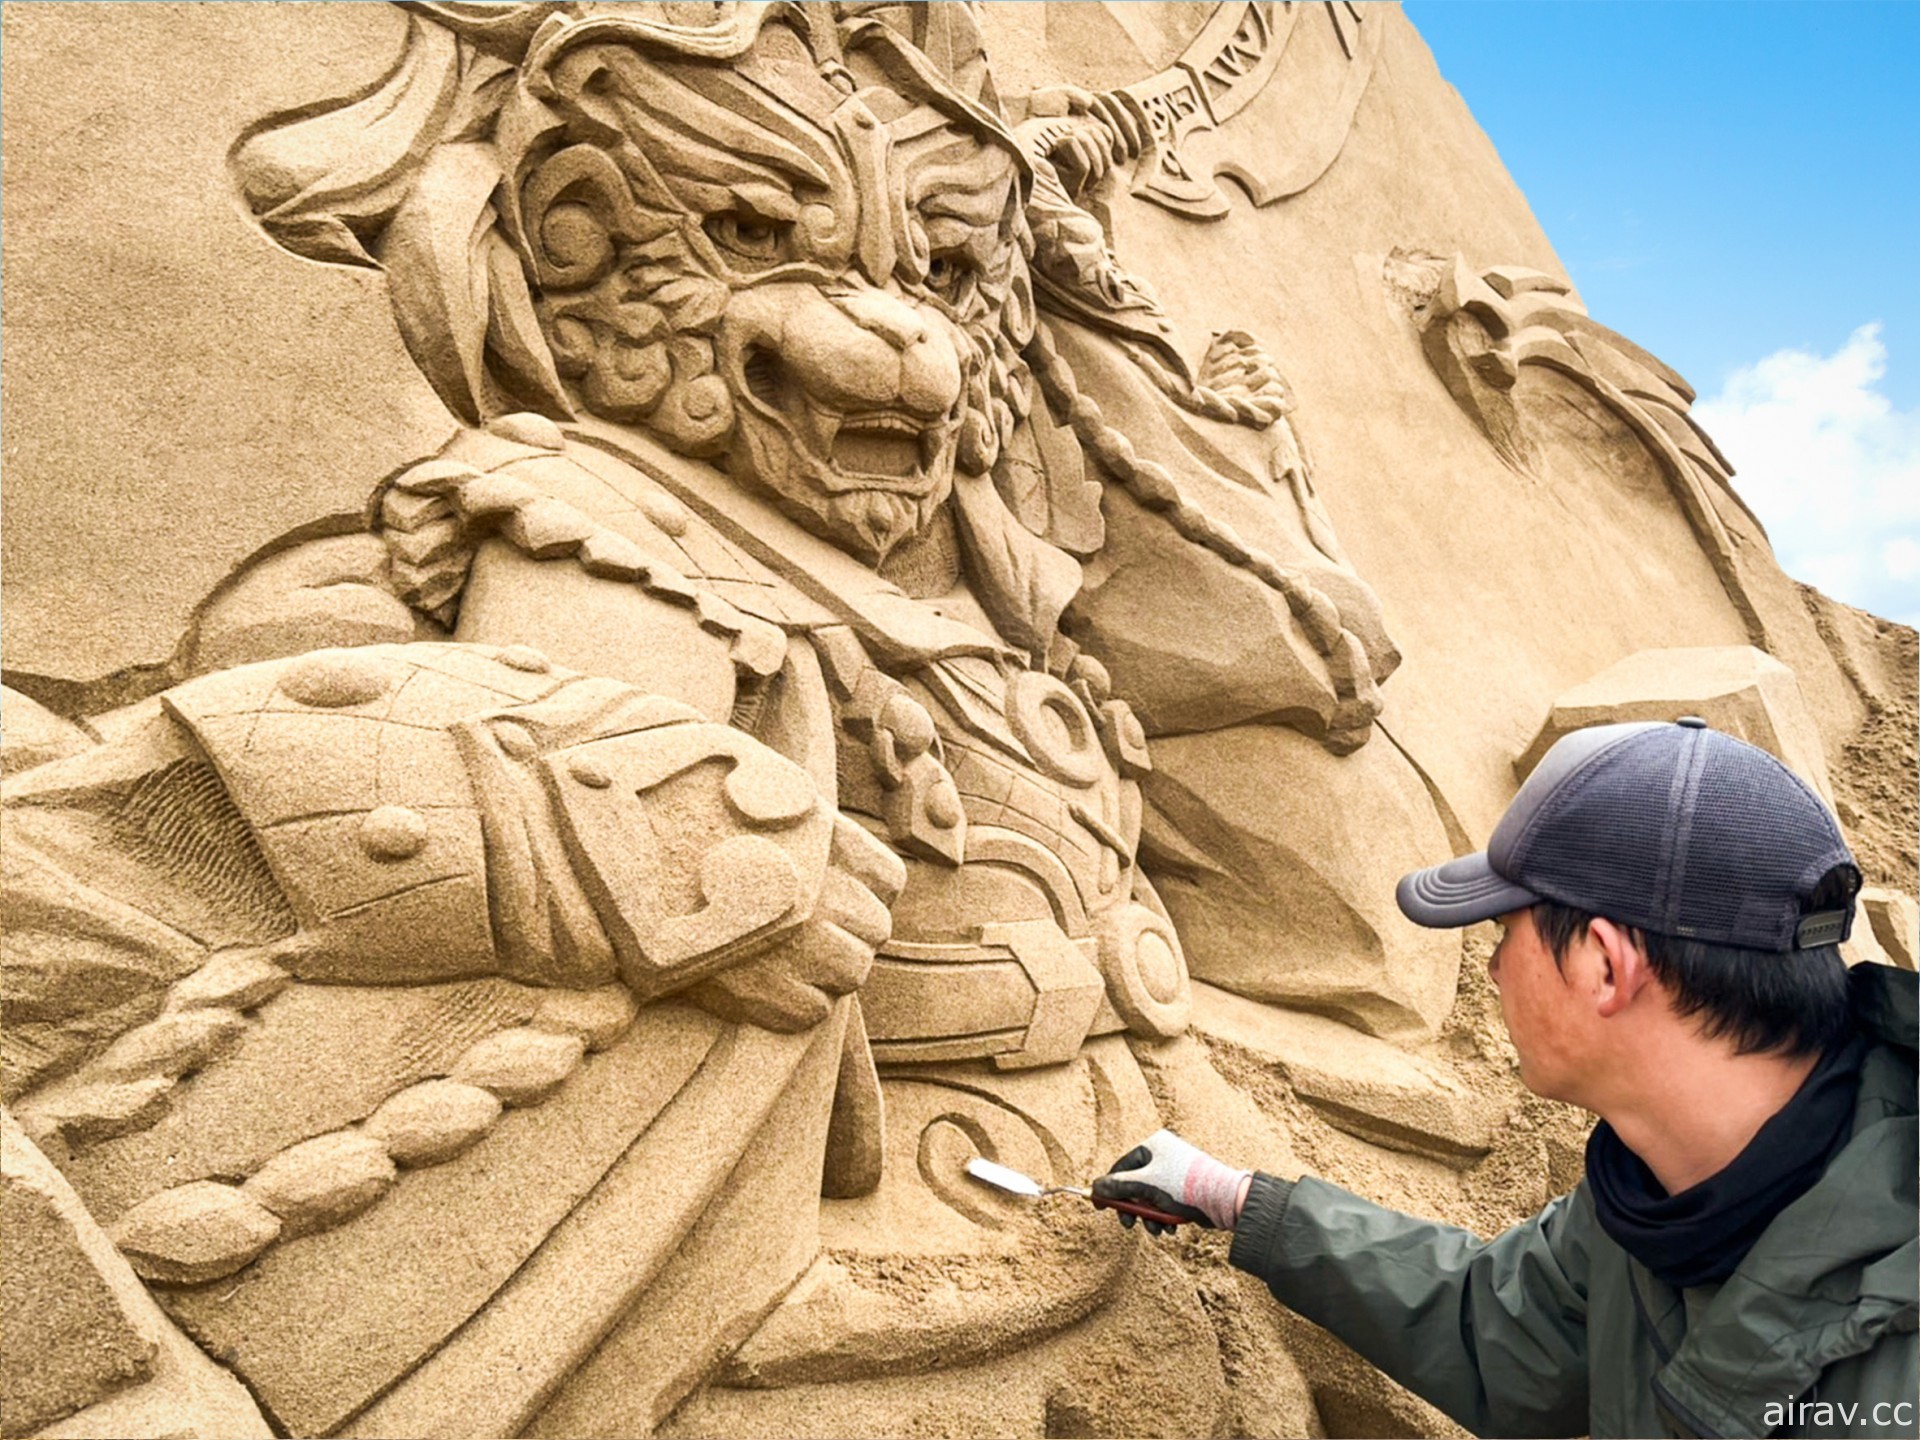 福隆國際沙雕藝術季「霹靂傳奇‧掌中天下」5/26 起正式開幕